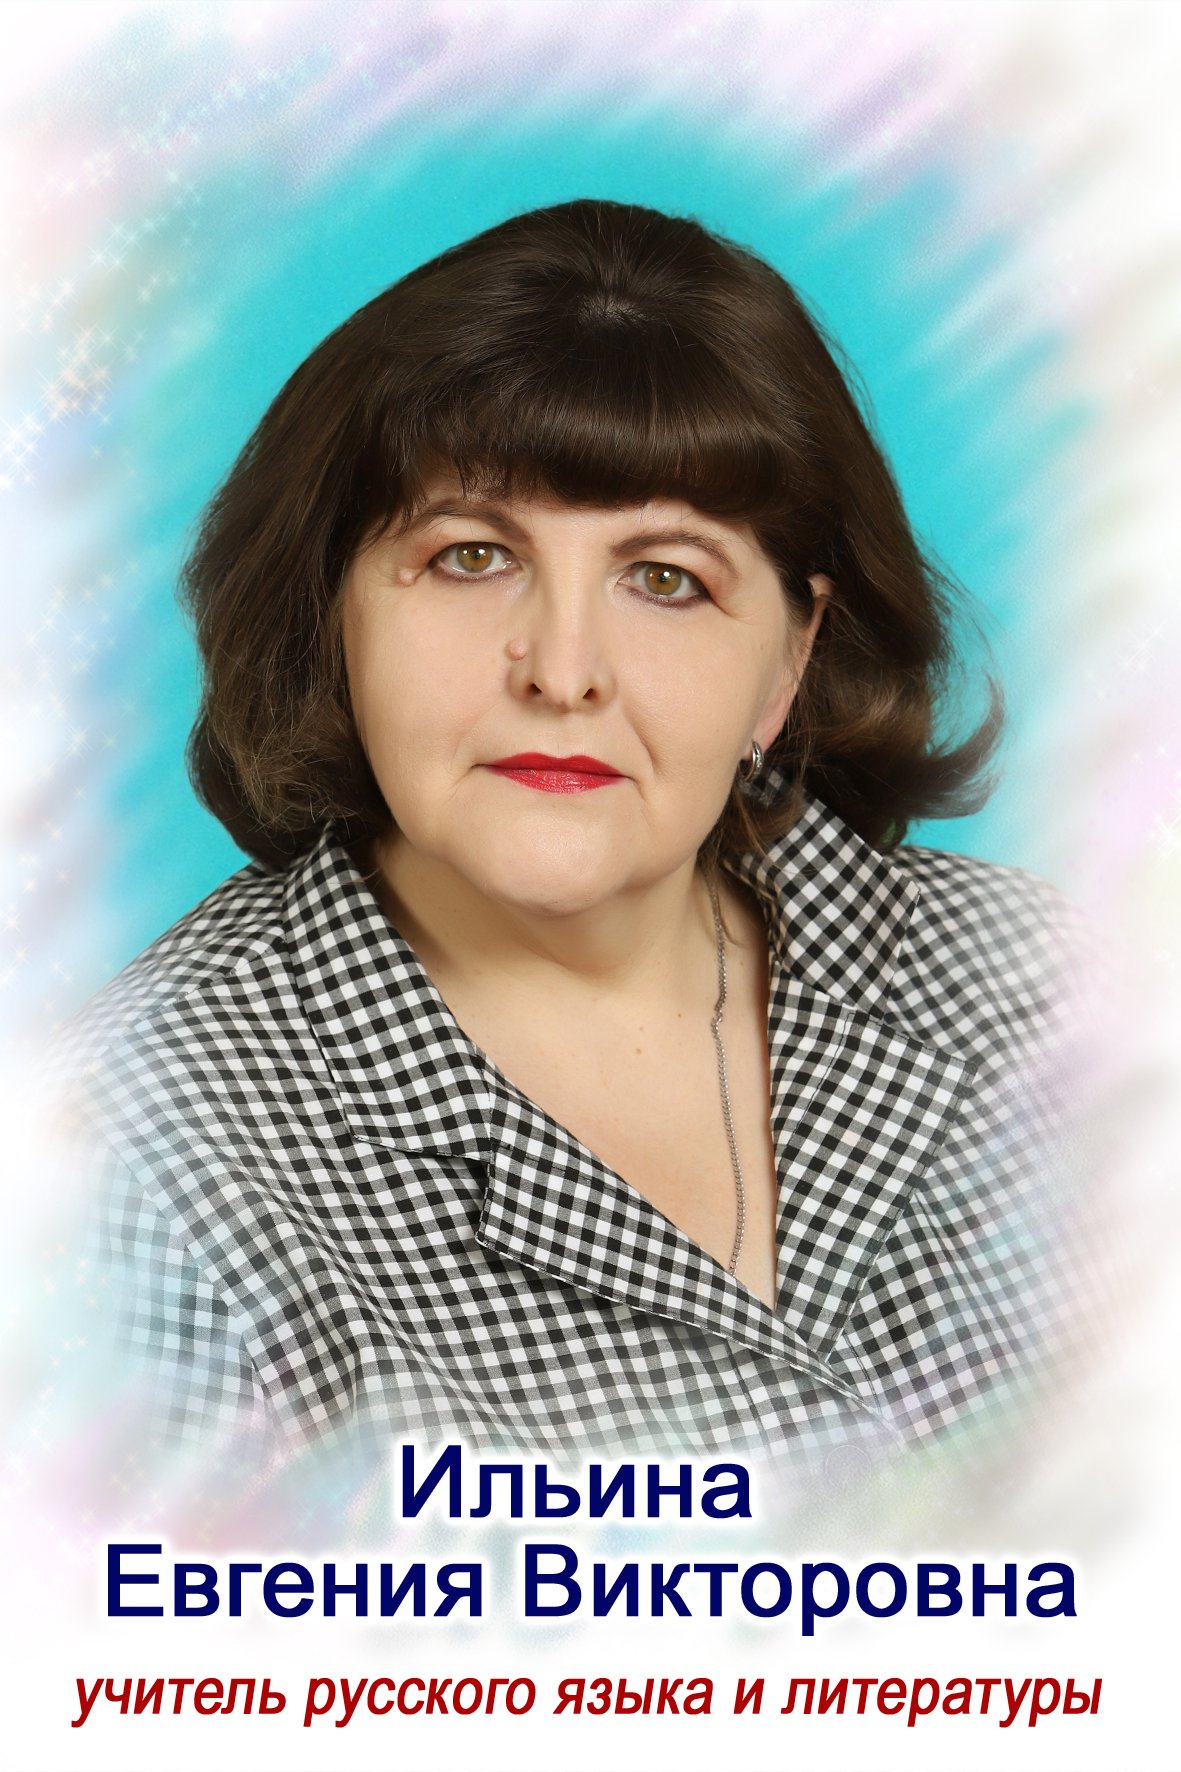 Ильина Евгения Викторовна.